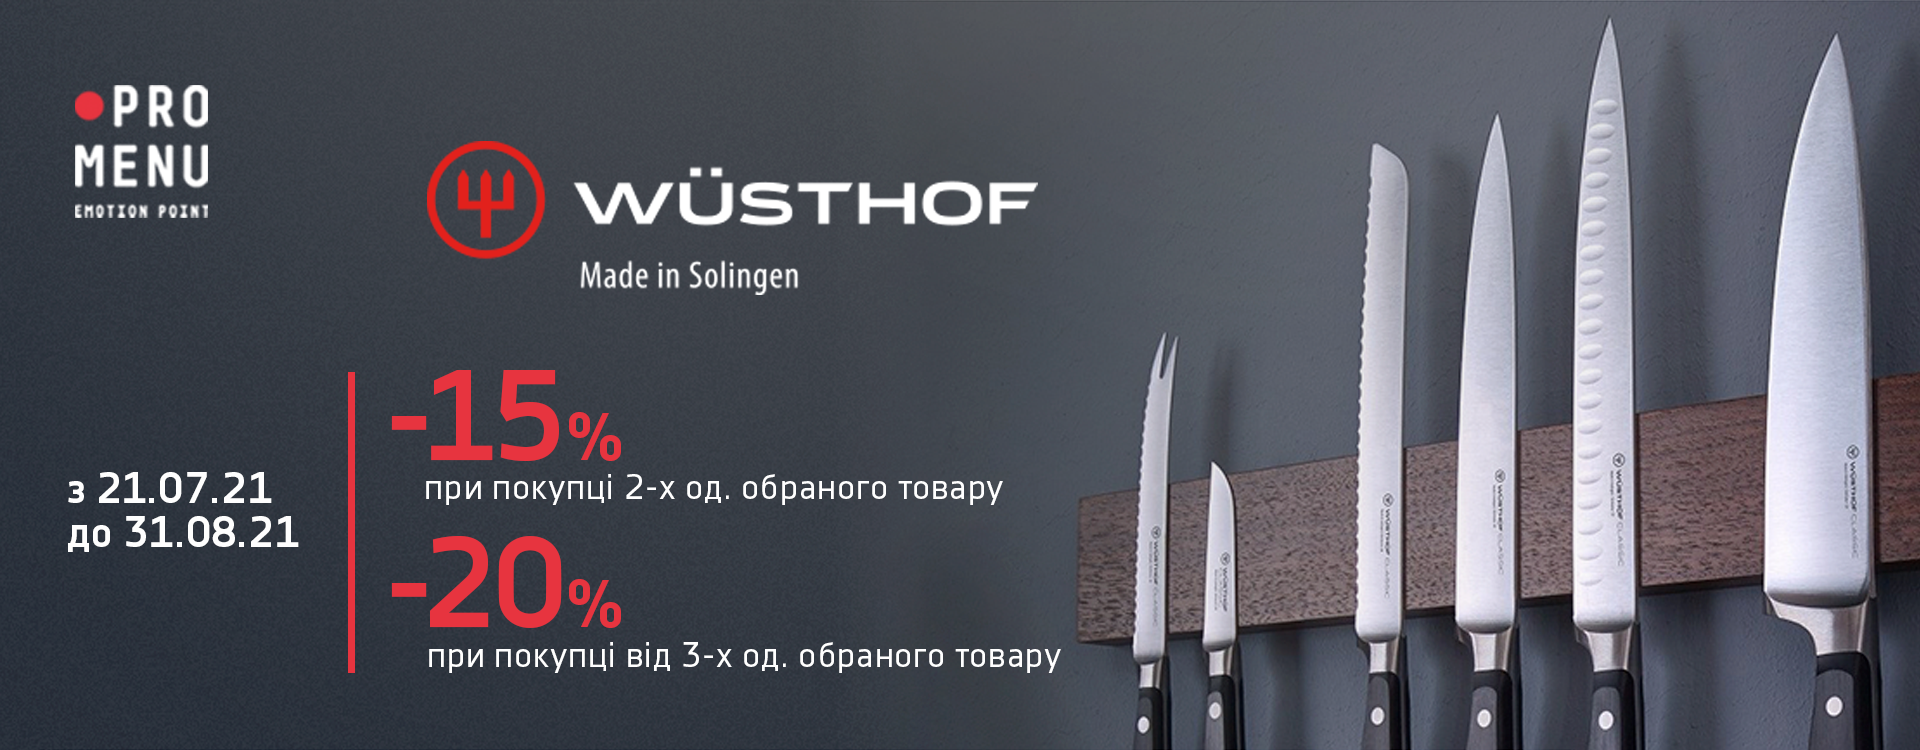 до 20% скидки на ножи от Wüsthof в ProMenu